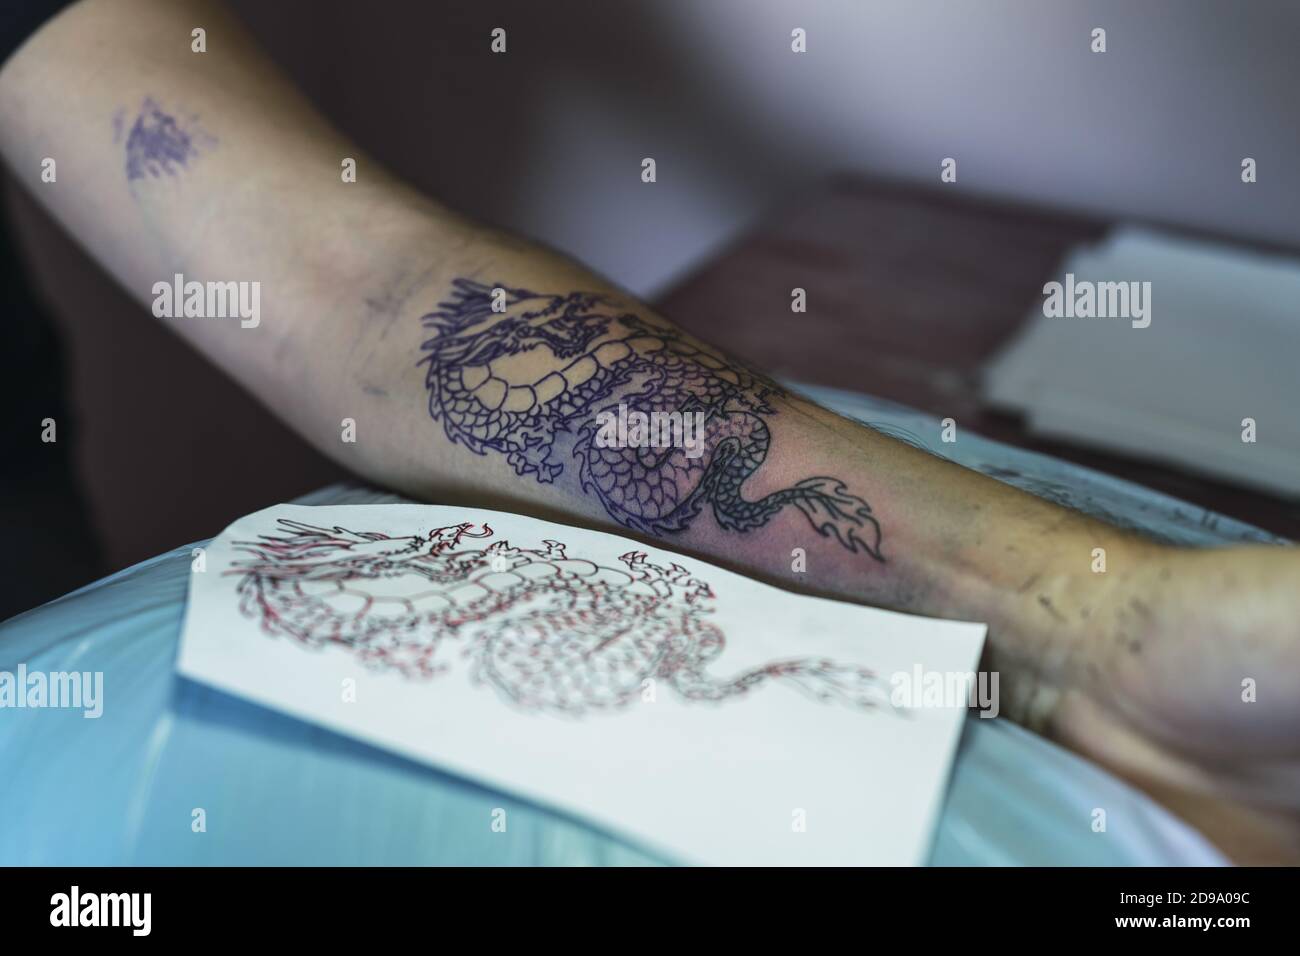 Tatuajes intrincados de tinta negra en la mano de un hombre fotos de  archivo